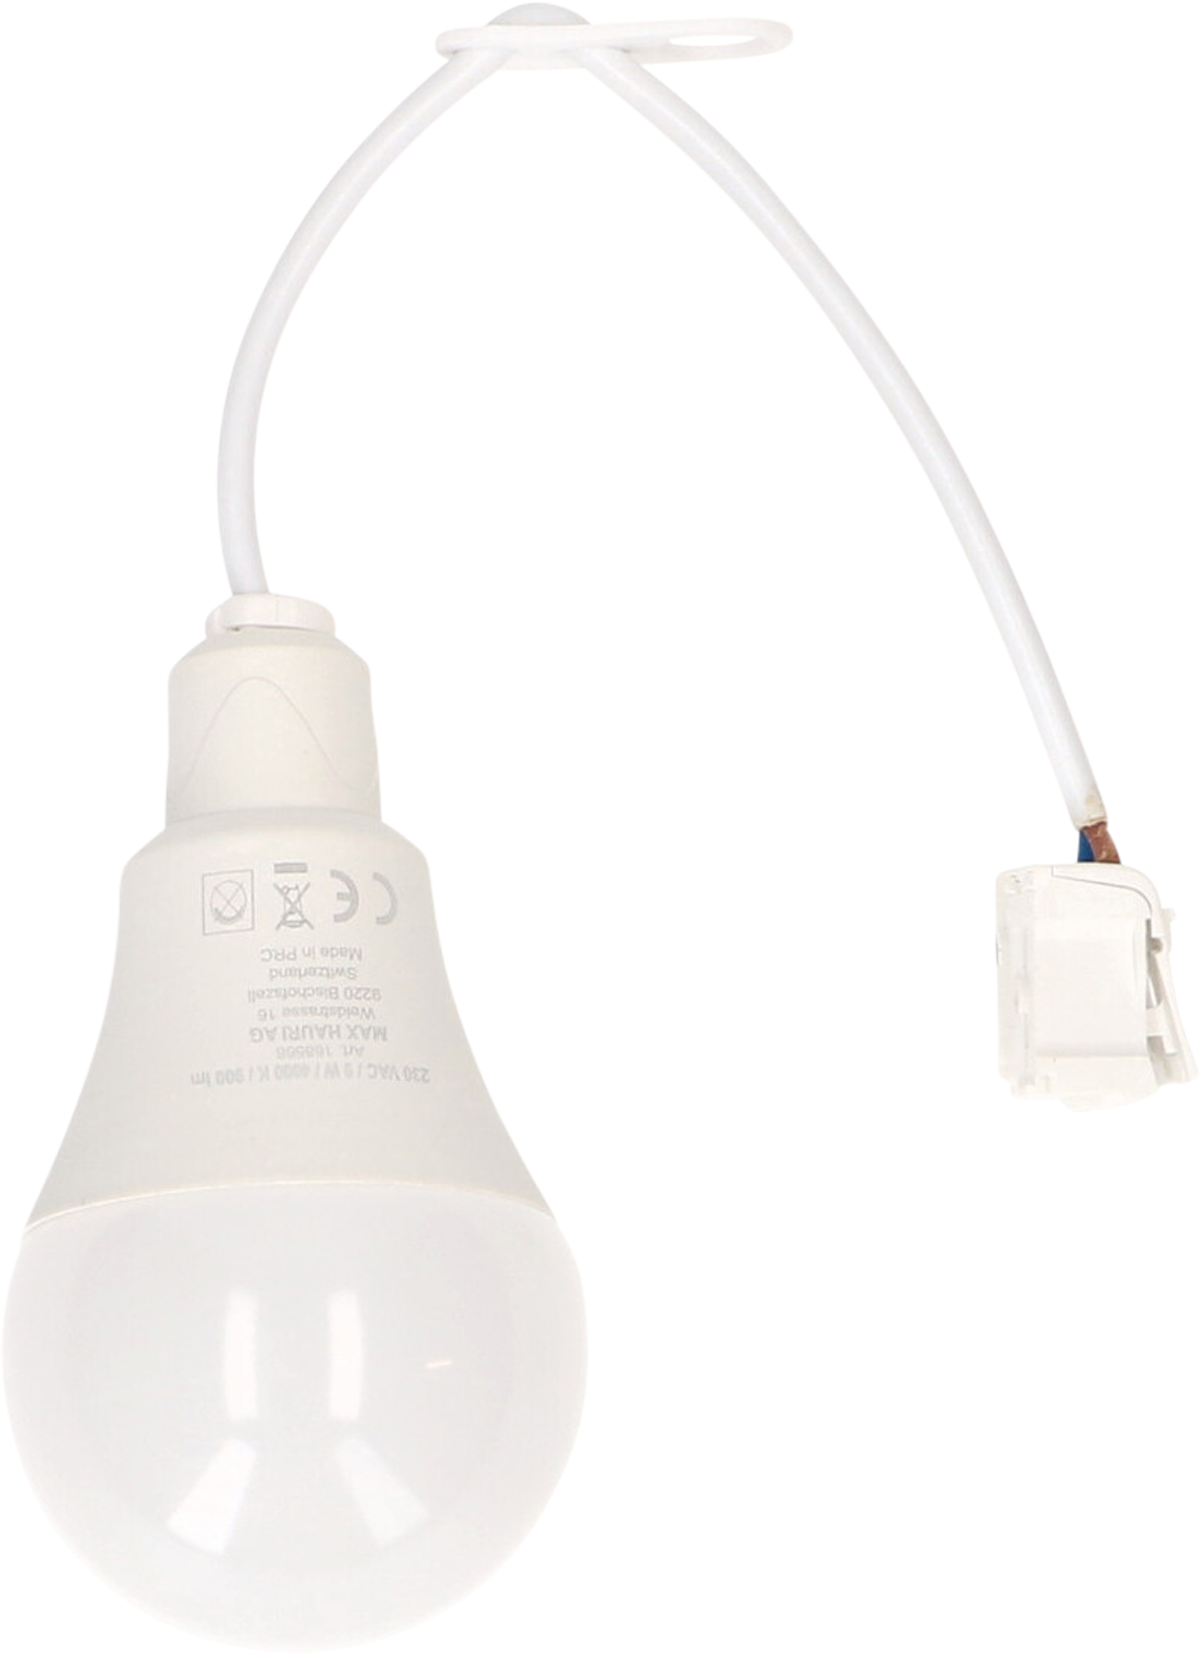 MAX HAURI Baustellenlampe LED inkl. Anschlusskabel & Steckklemmen 4000K - Lampen, Leuchten